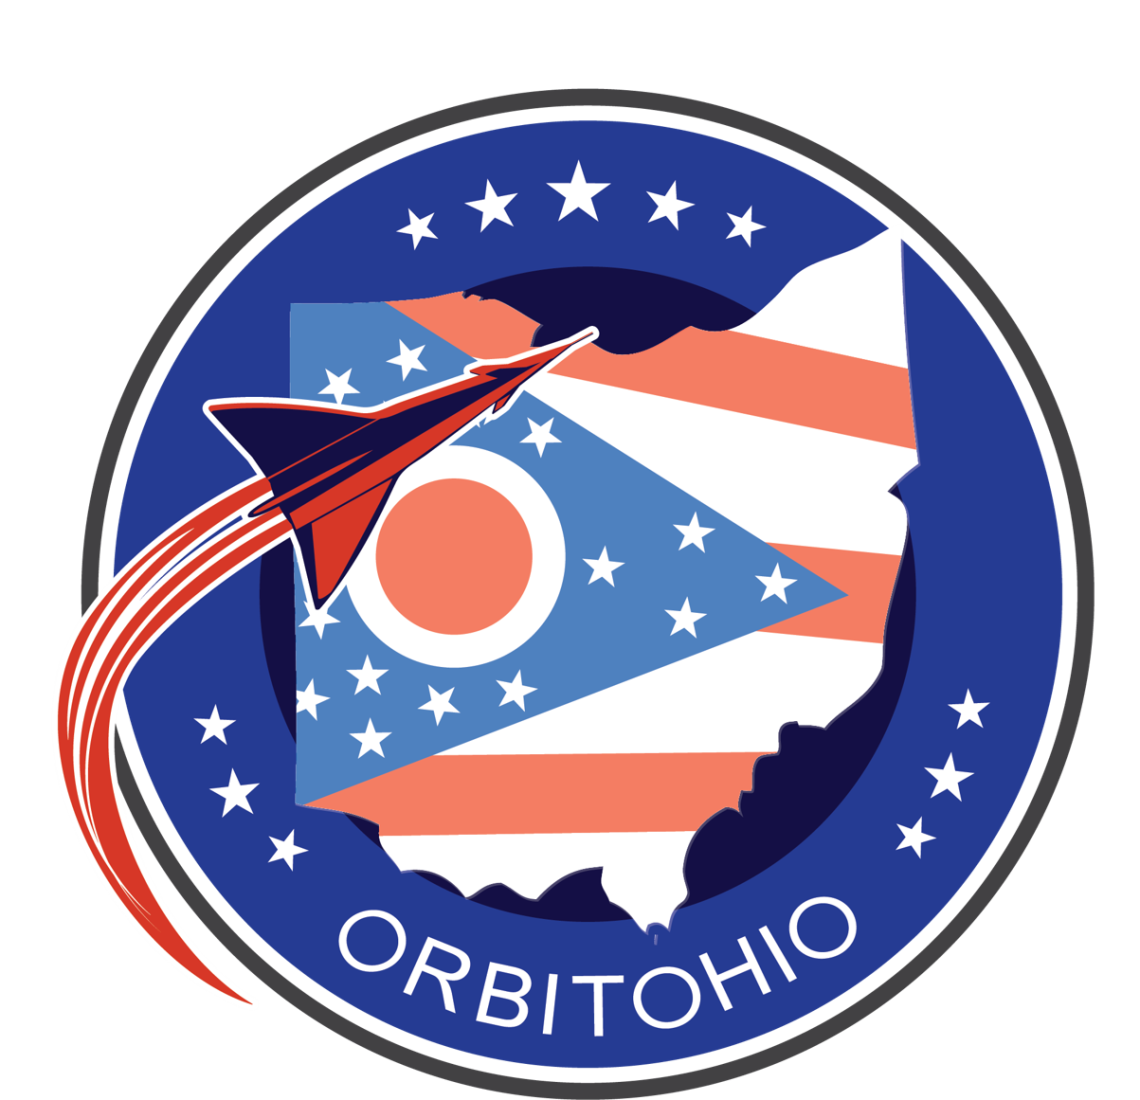 Orbit Ohio